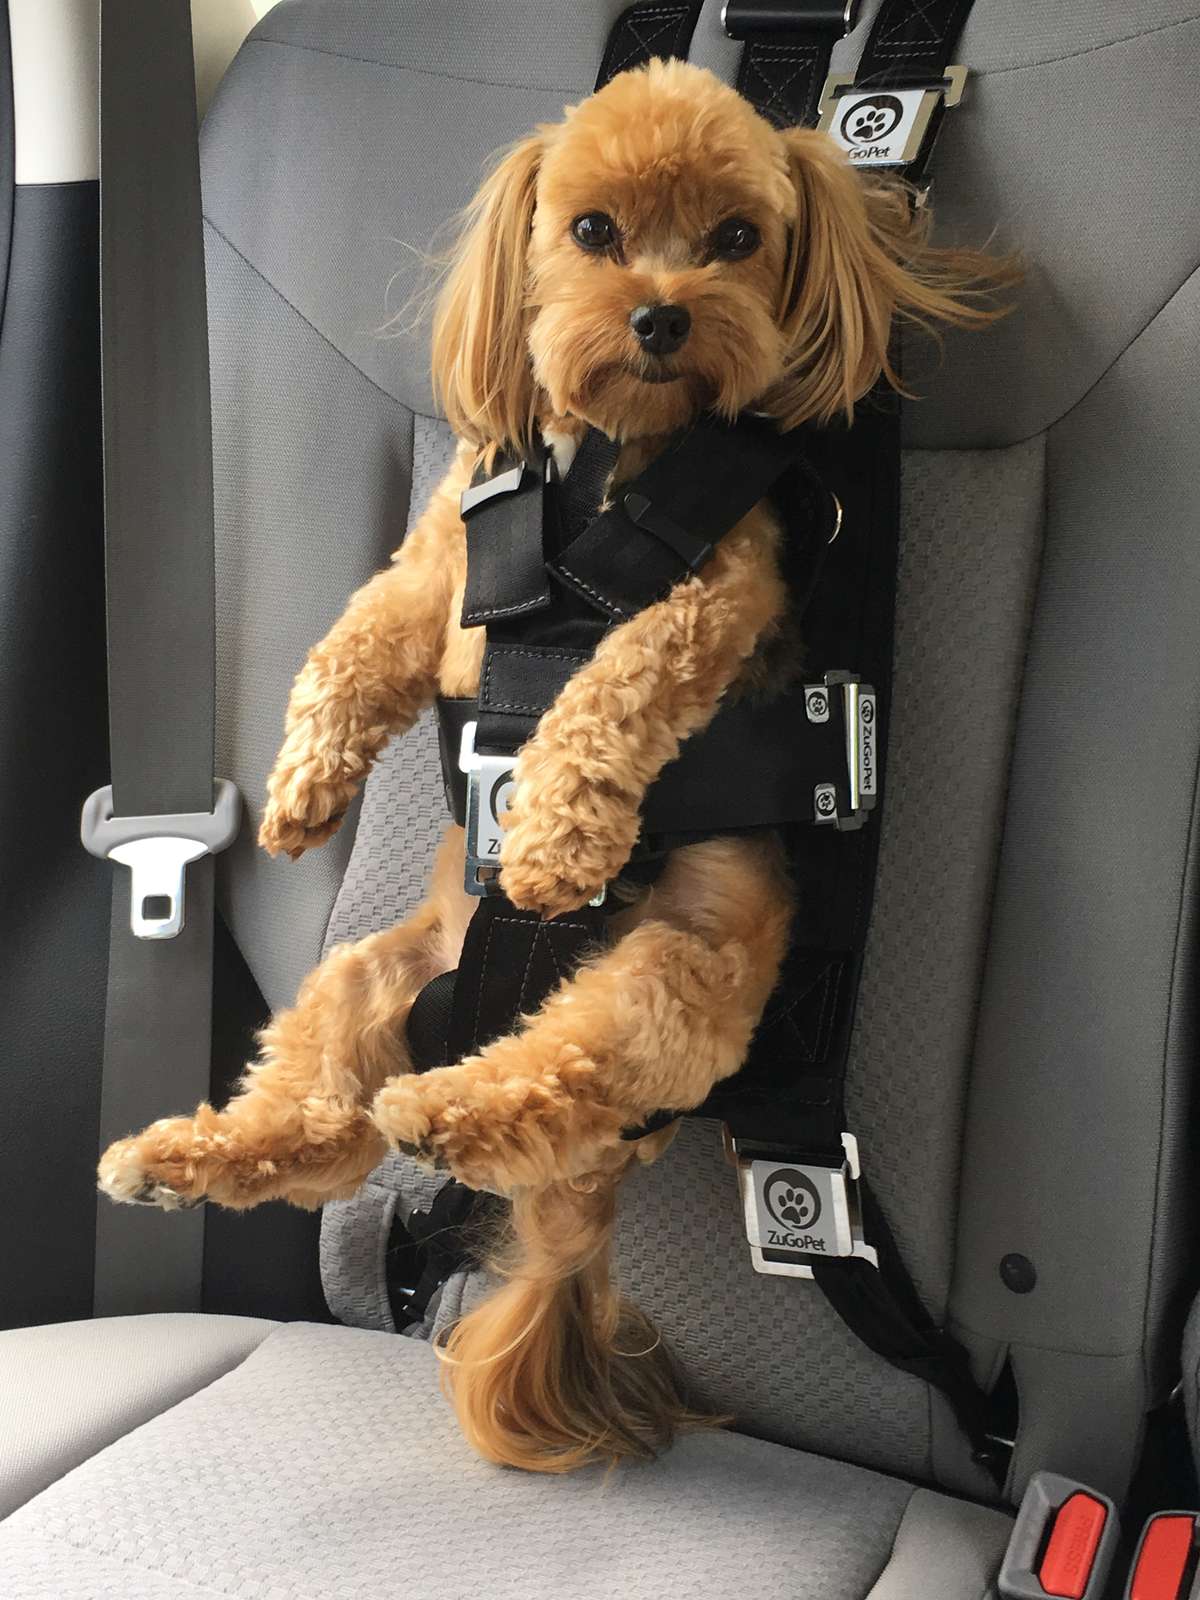 safest dog harness for car travel